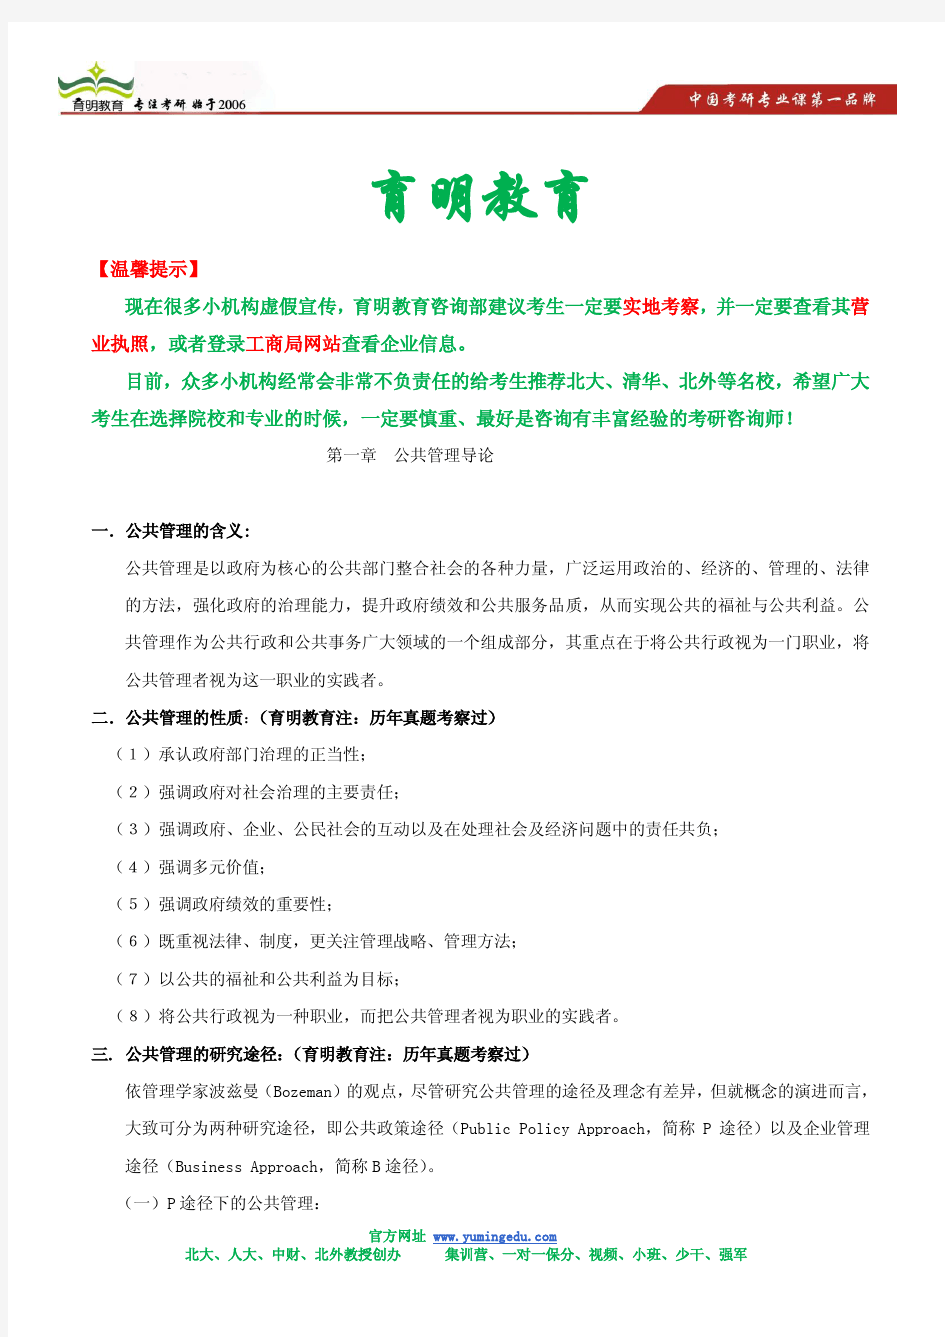 张成福 公共管理学 考研笔记背诵版